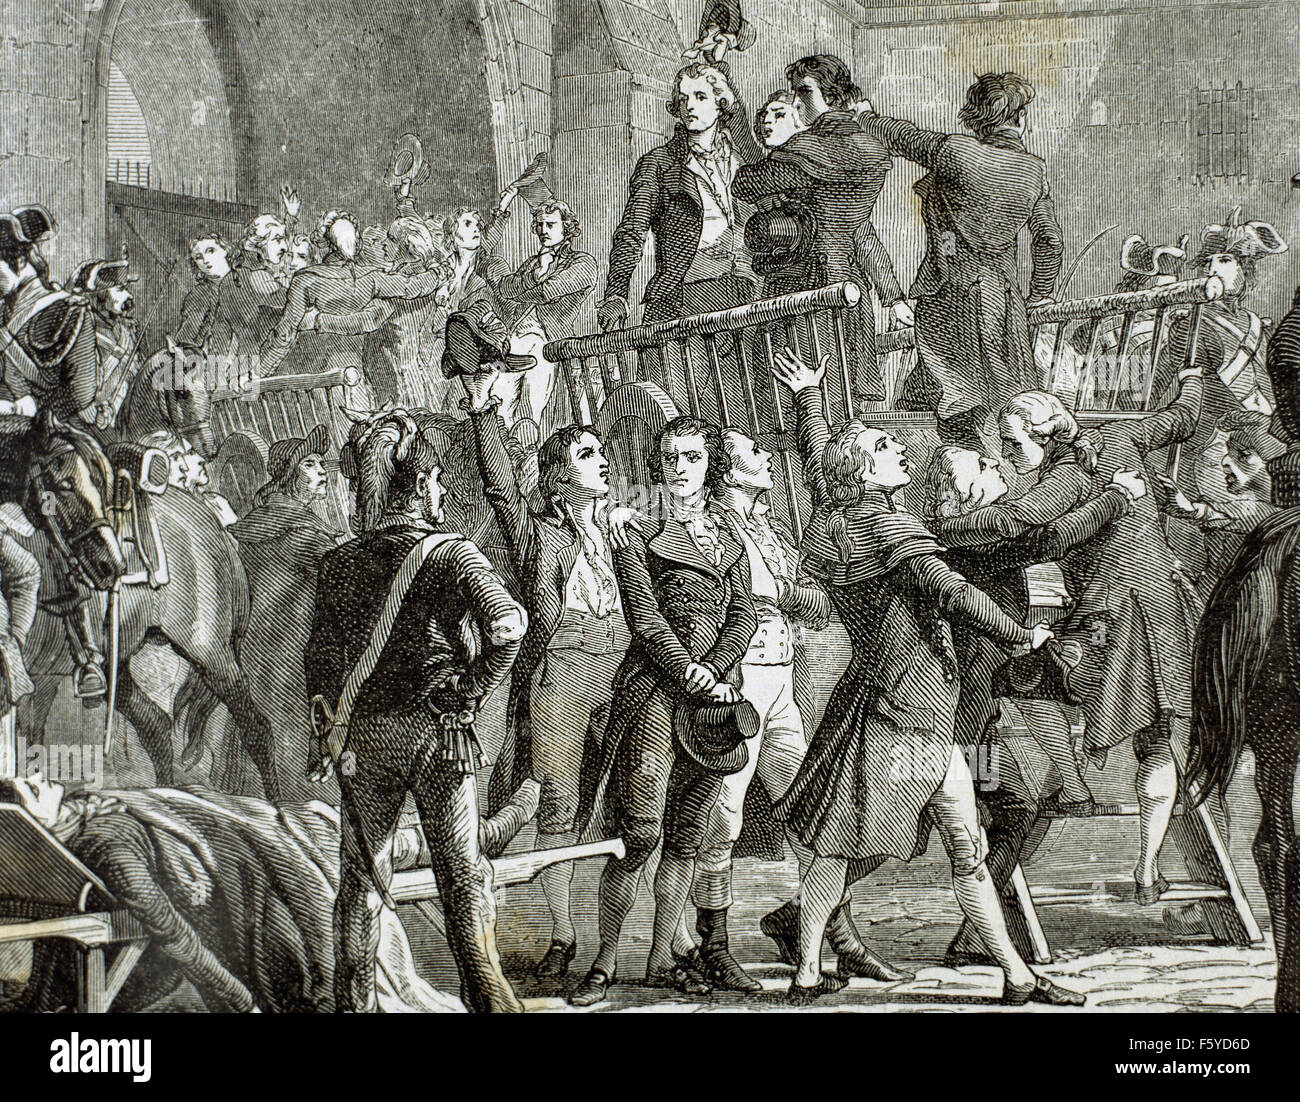 Rivoluzione francese. 1789. Il Girondins fuori di prigione per andare al patibolo. Incisione del XIX secolo. Foto Stock